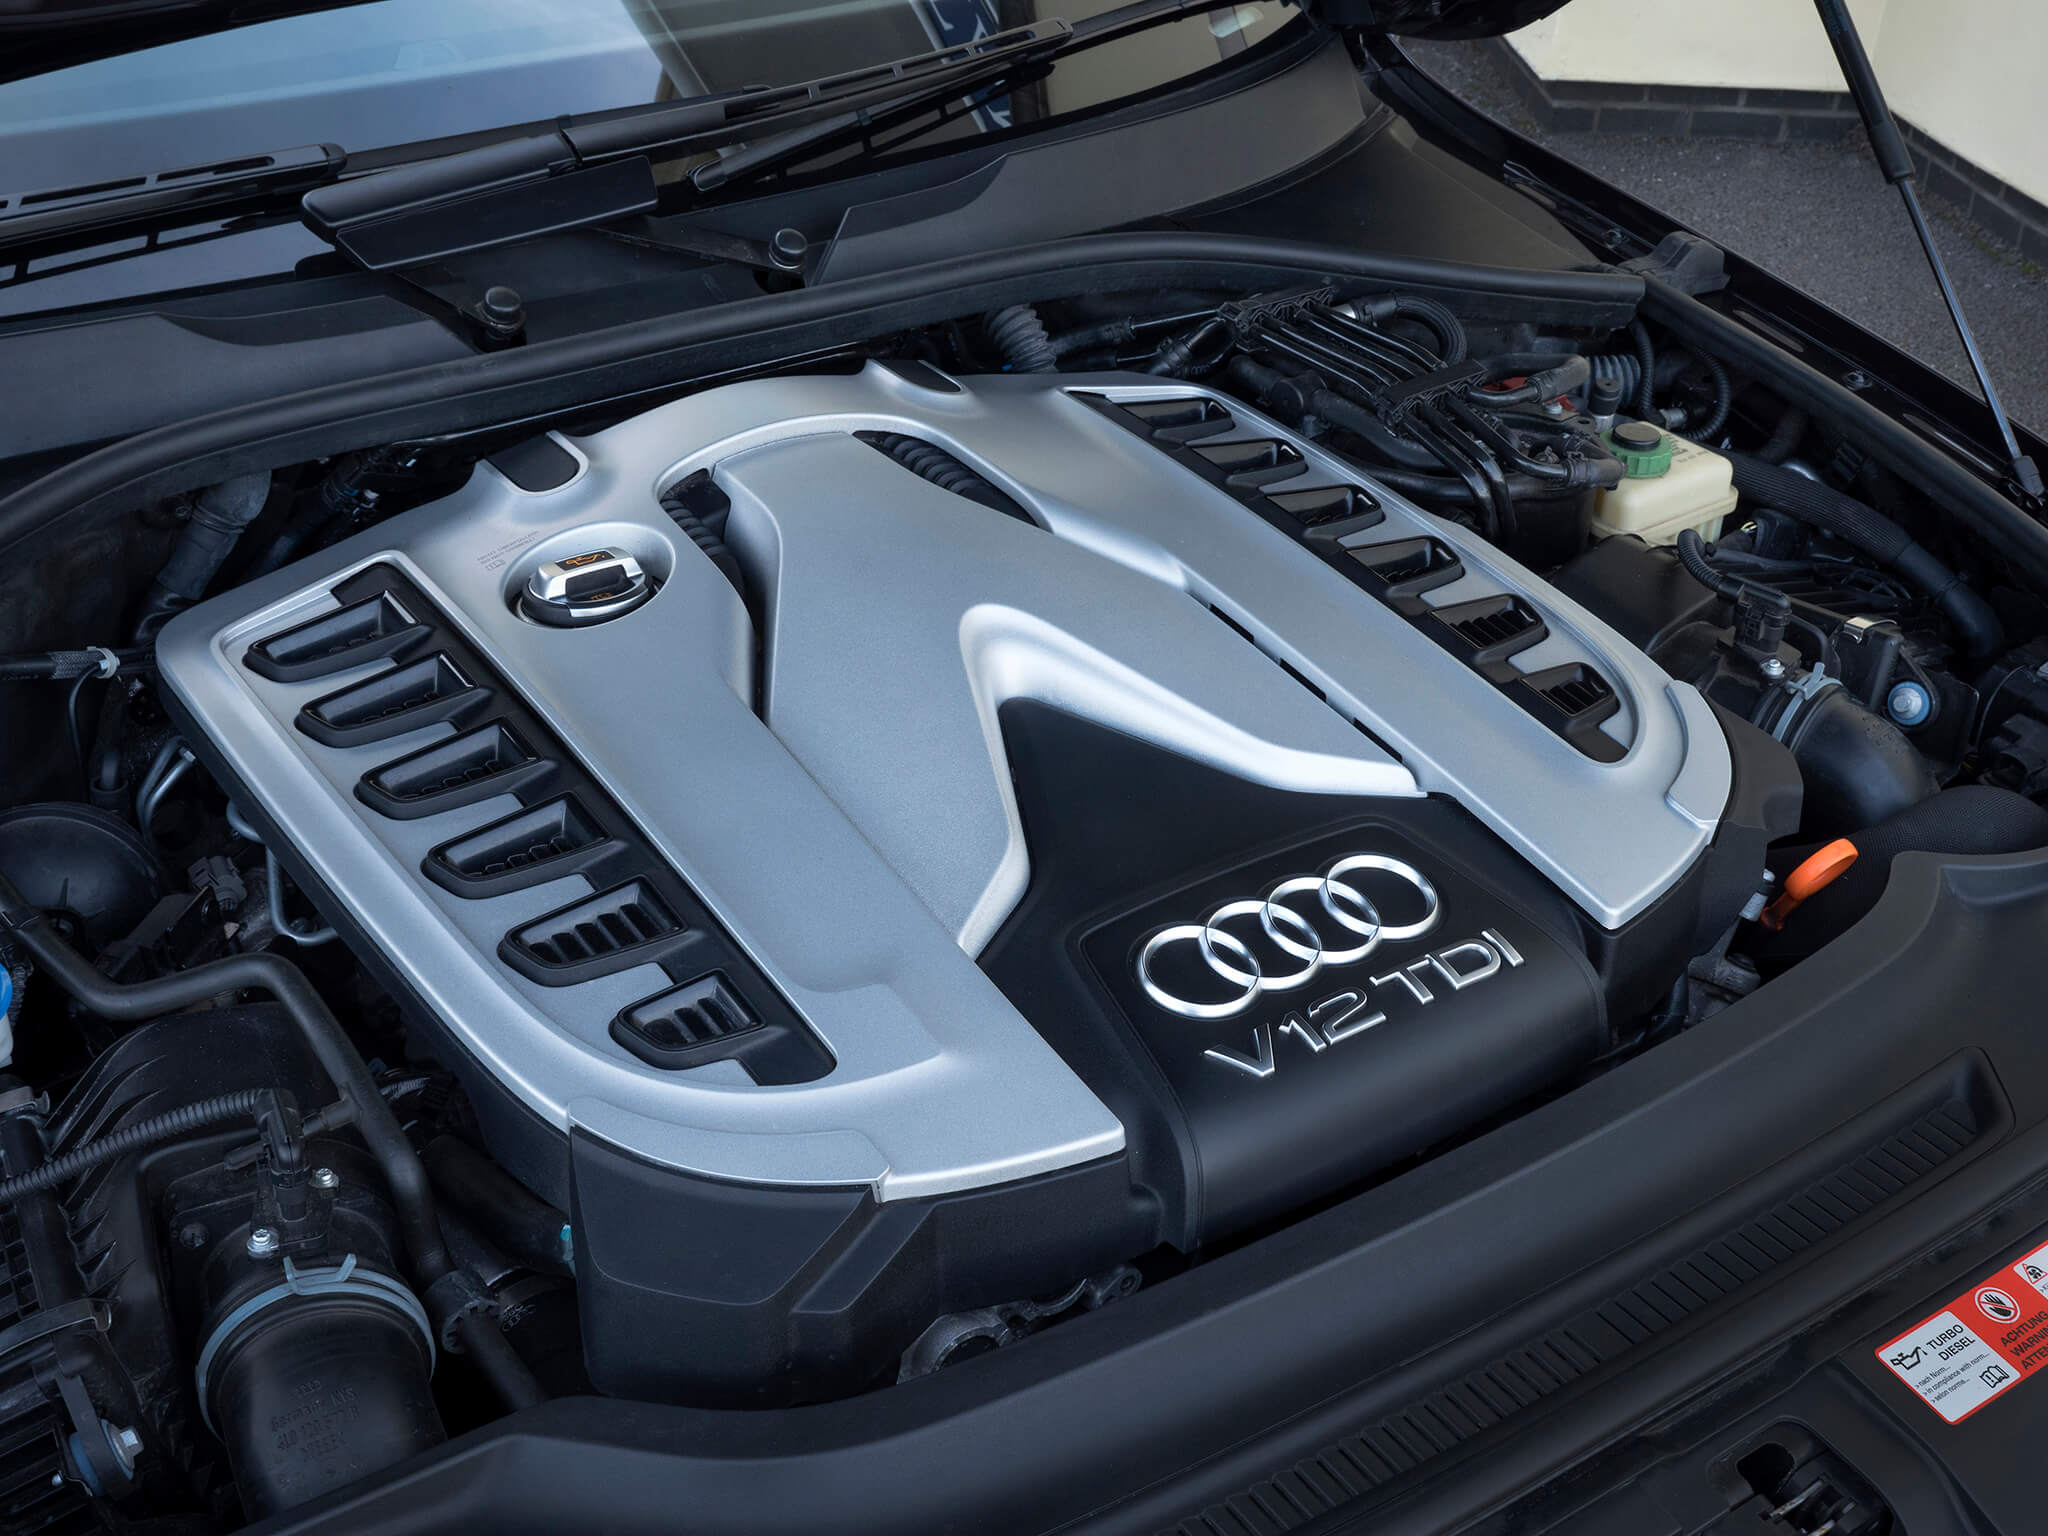 Audi Q7 V12 TDI motor